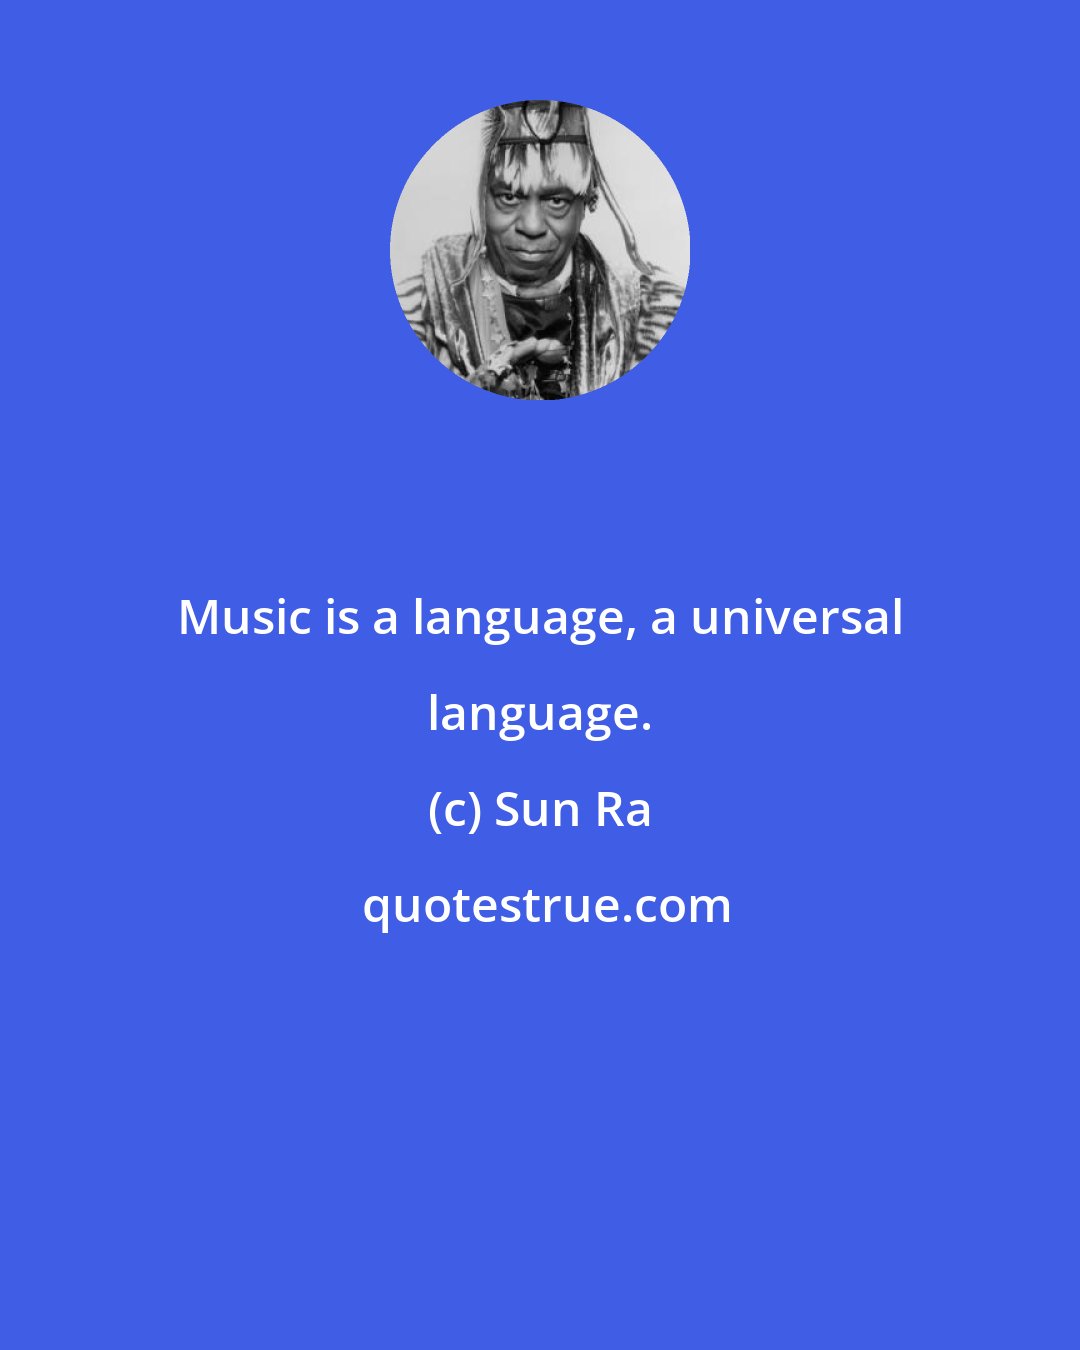 Sun Ra: Music is a language, a universal language.